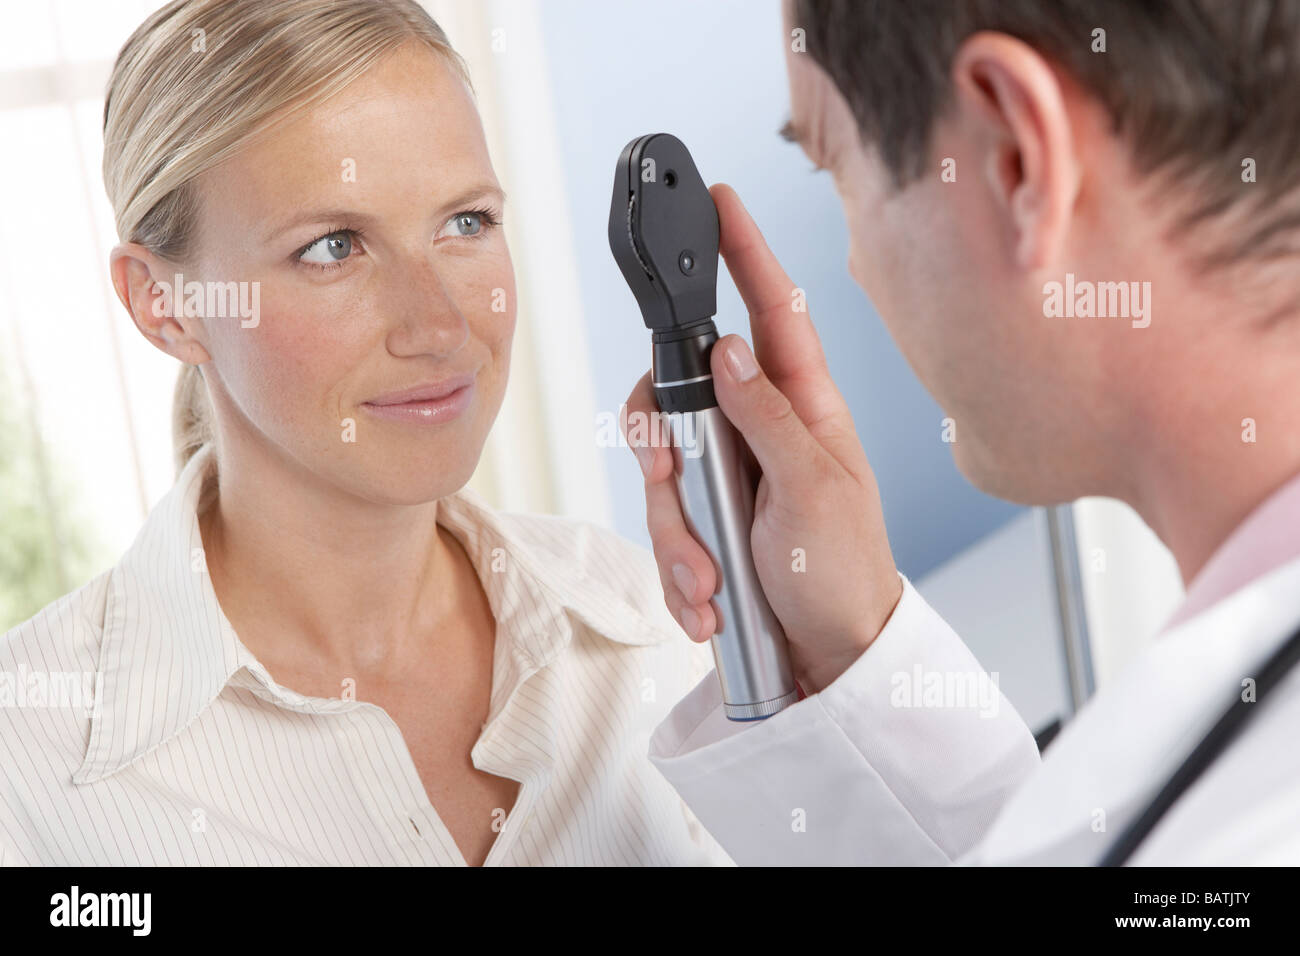 Un Examen De Los Ojos Médico Con Un Oftalmoscopio Durante Un Examen Ocular Fotografía De Stock 7369